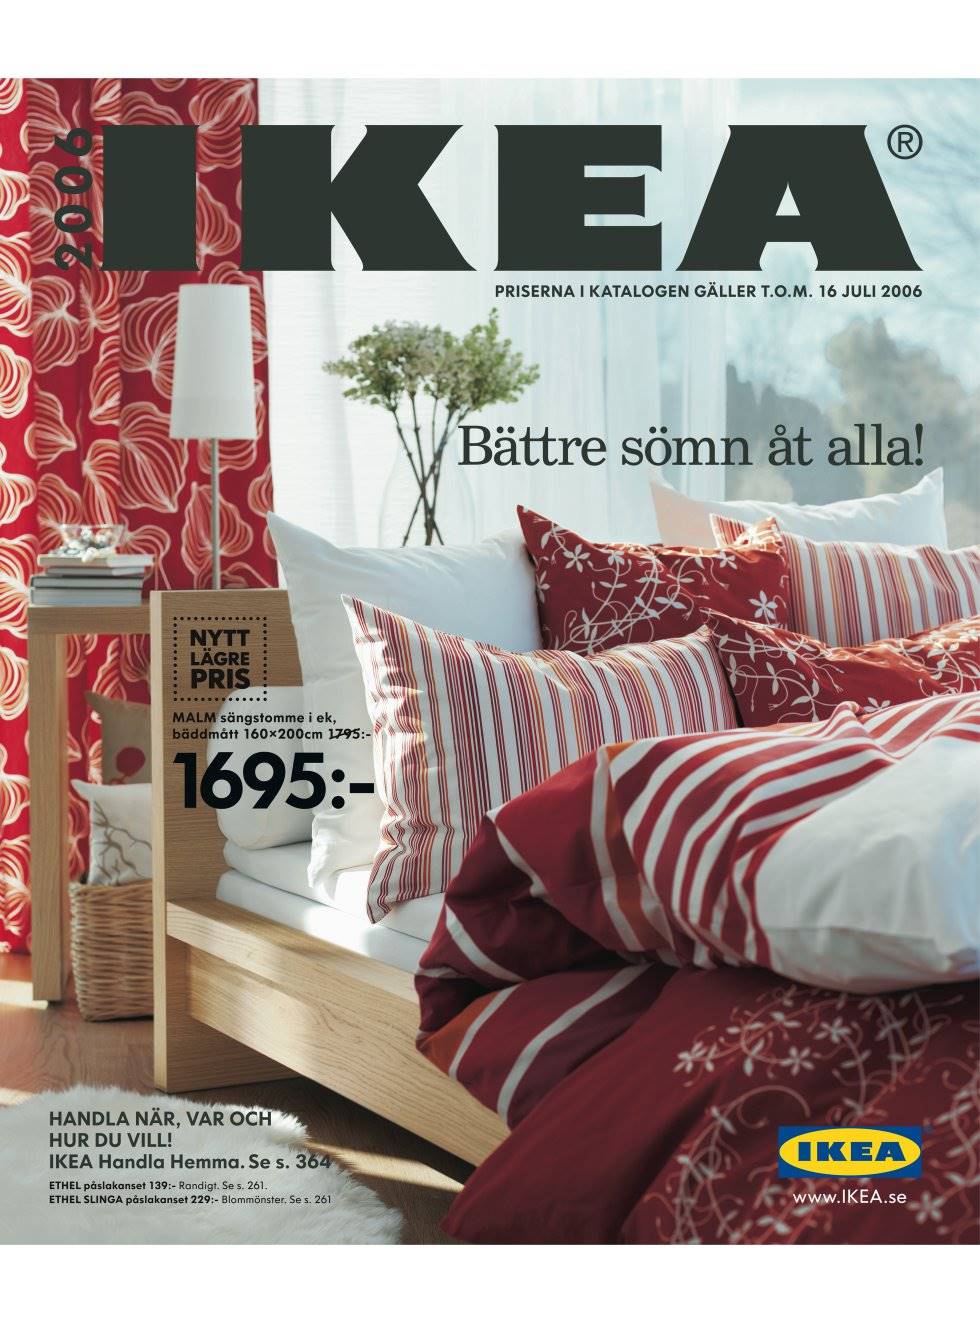 Catálogo de IKEA del 2006.